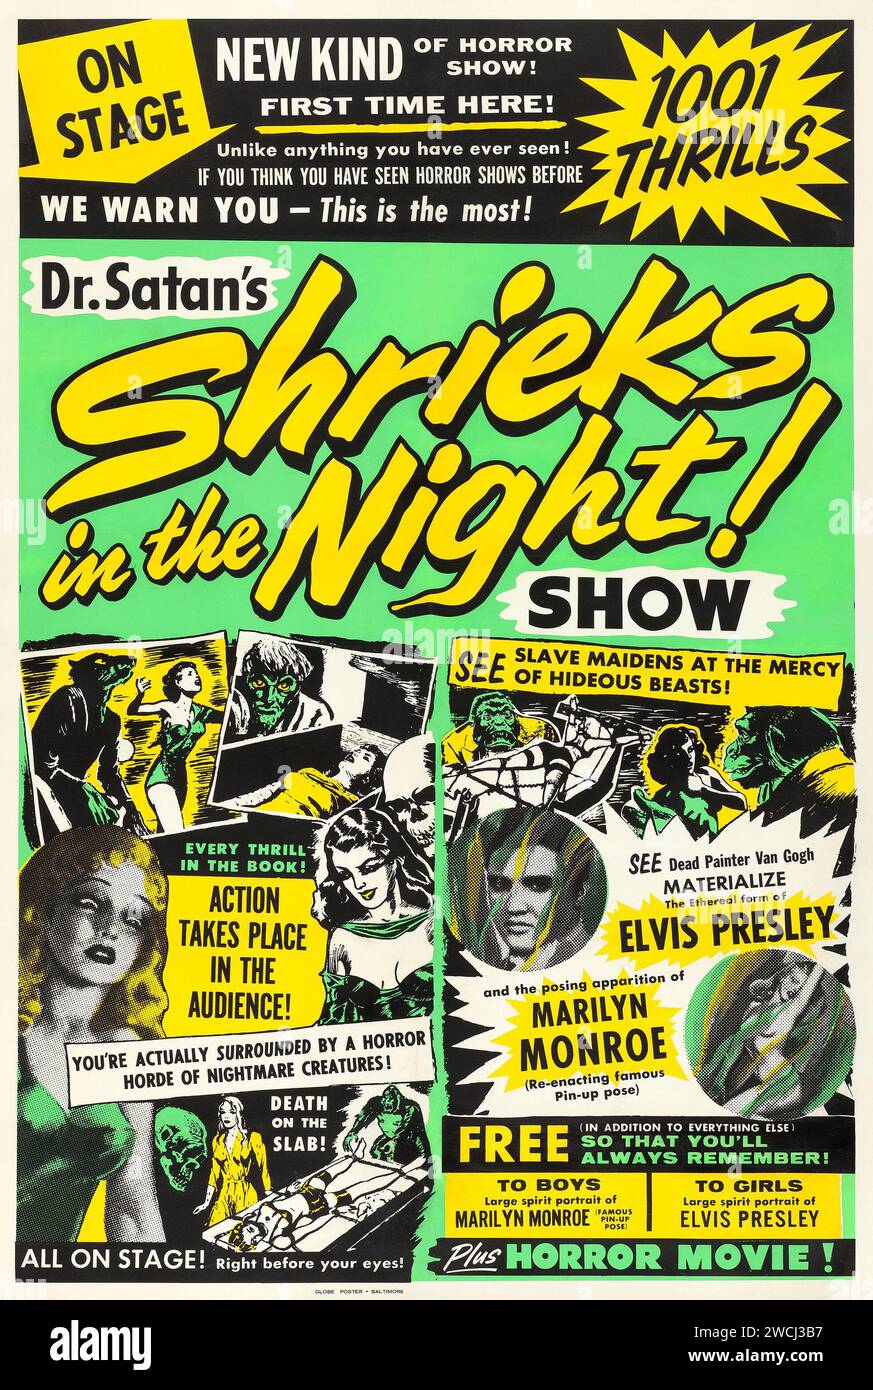 Spectacle d'horreur - les cris du Dr Satan dans la nuit! (Années 1960) feat Elvis Presley, Marilyn Monroe - films d'horreur montrant - 1001 sensations fortes Banque D'Images